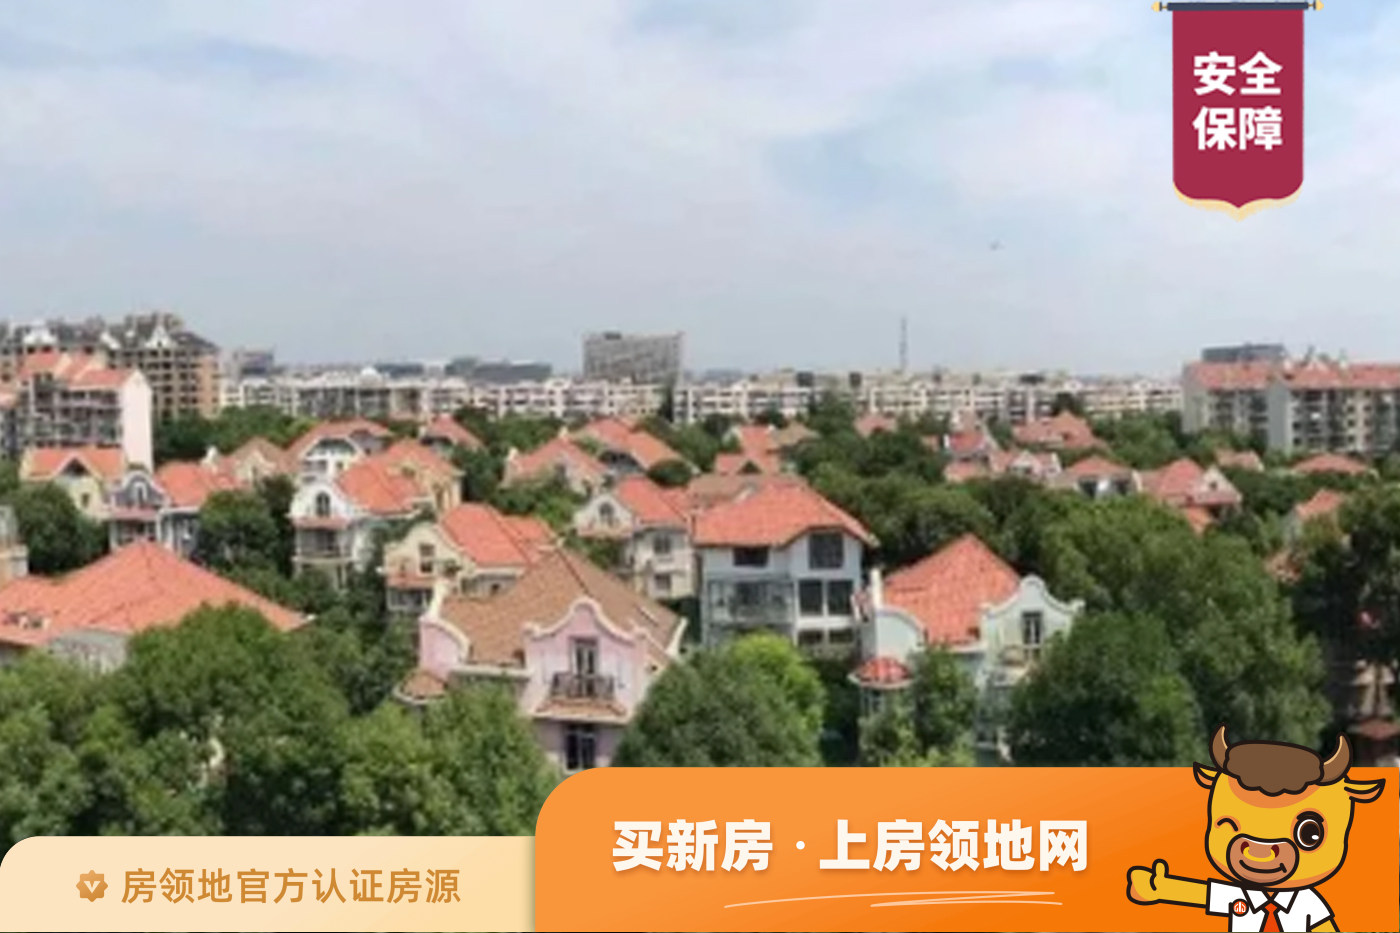 上海捷克住宅小区效果图3